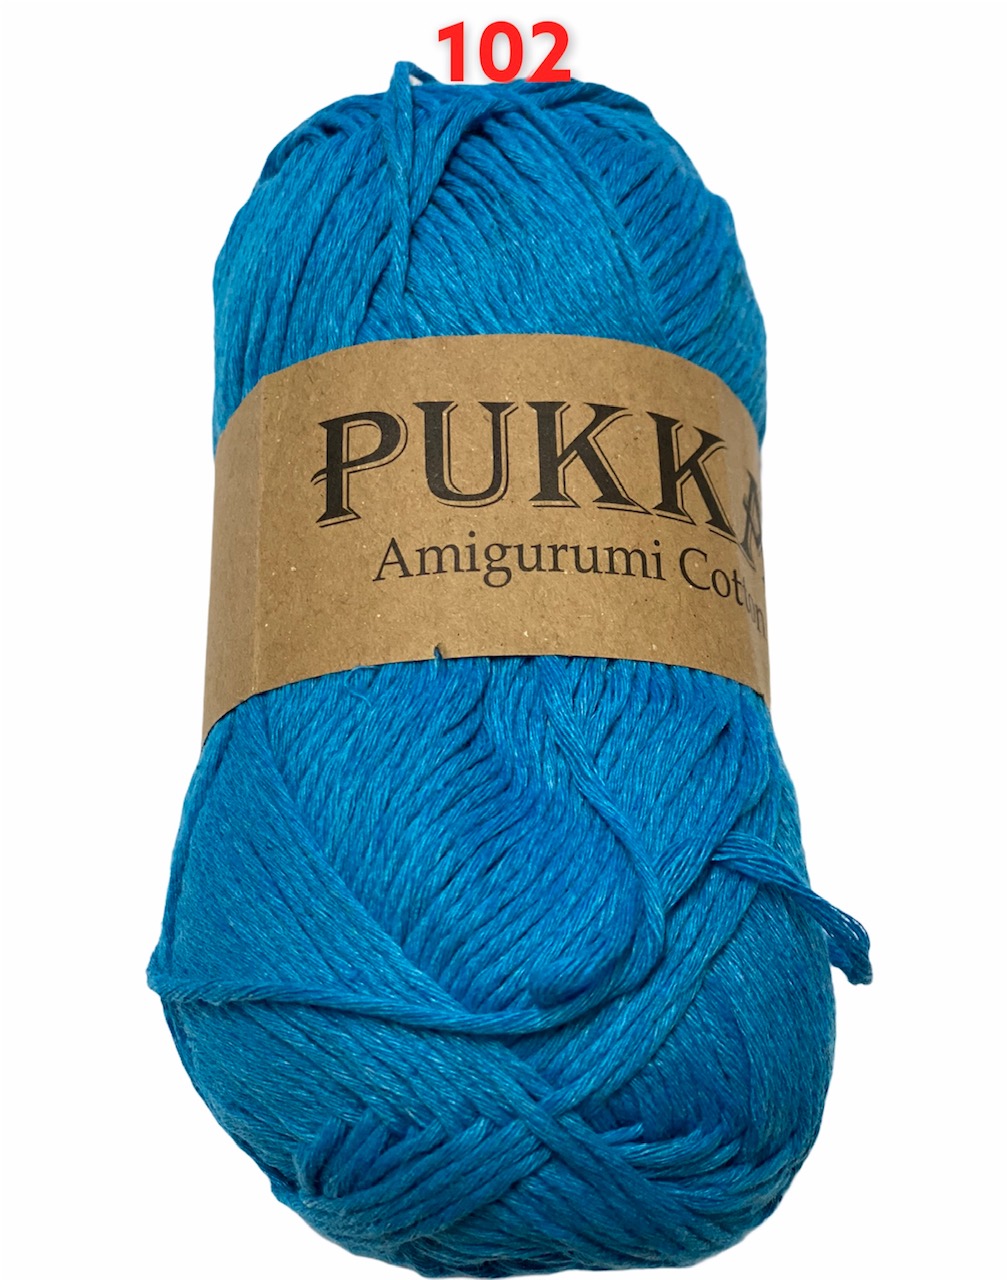 PUKKA Amigurumi Cotton 100g,102